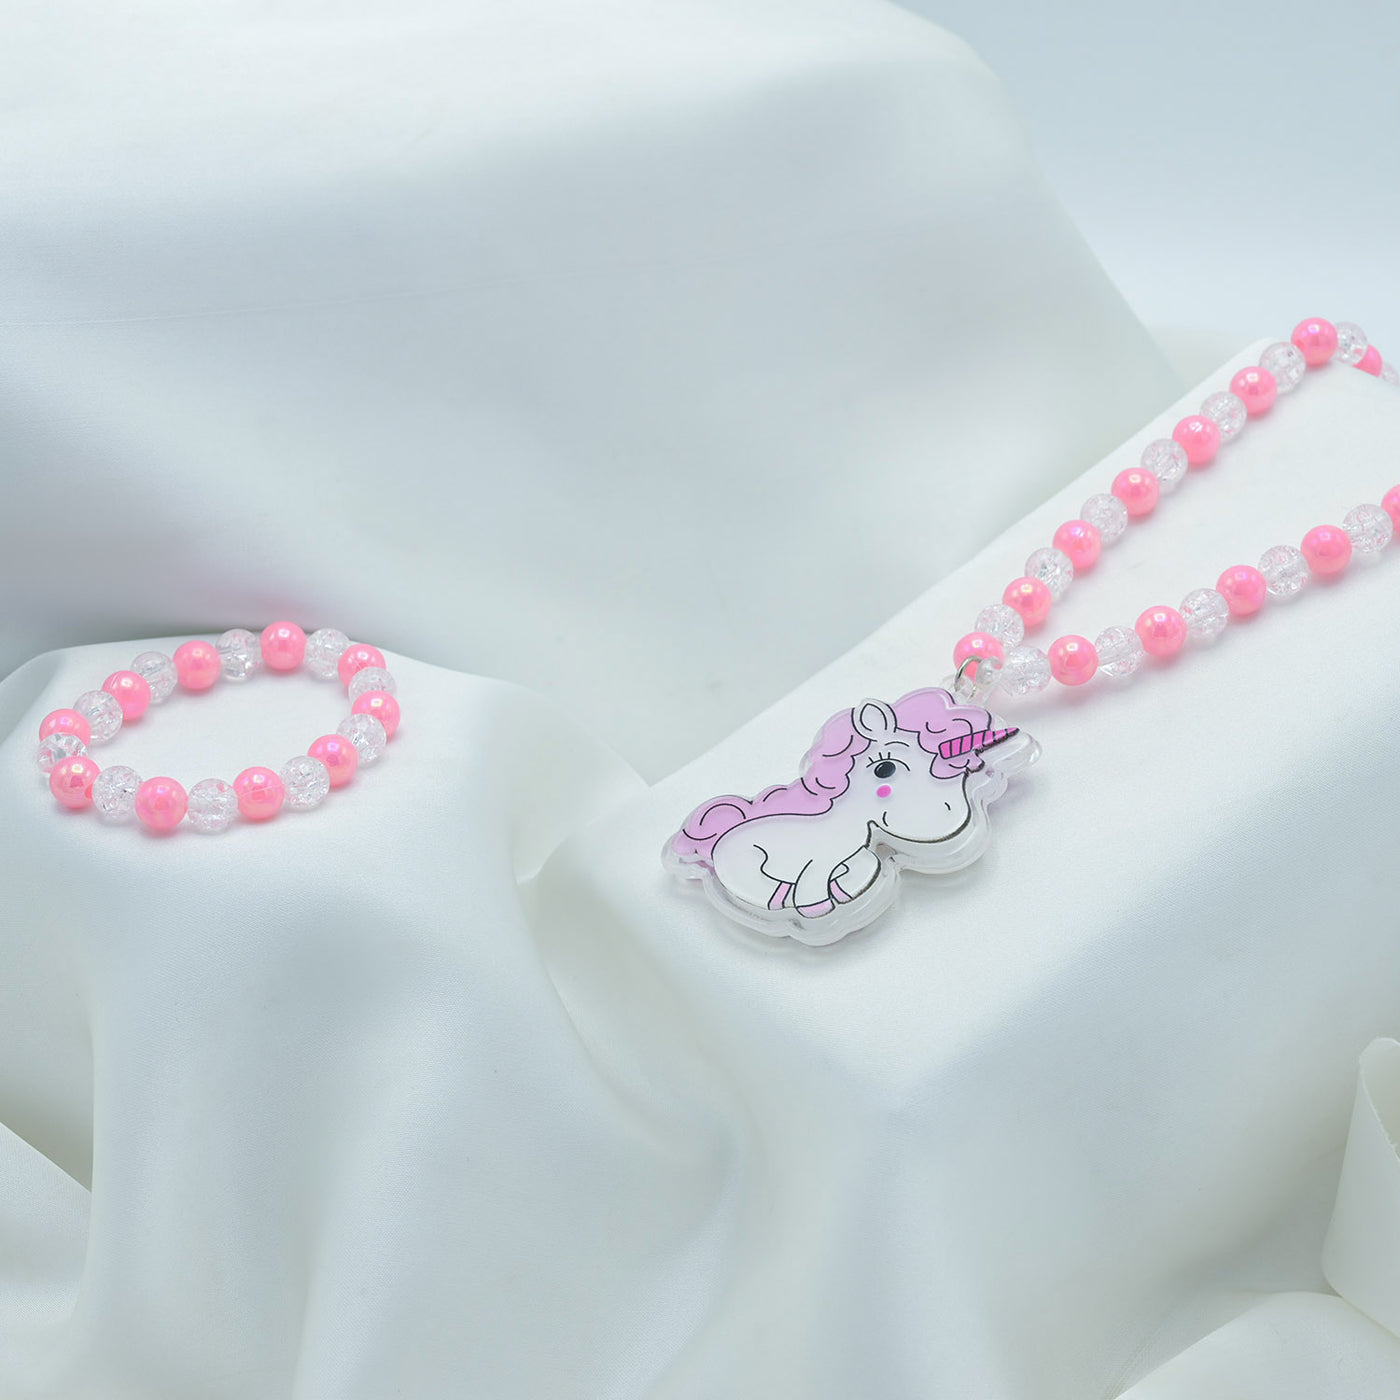 Elegant Beaded Necklace & Bracelet For Girls